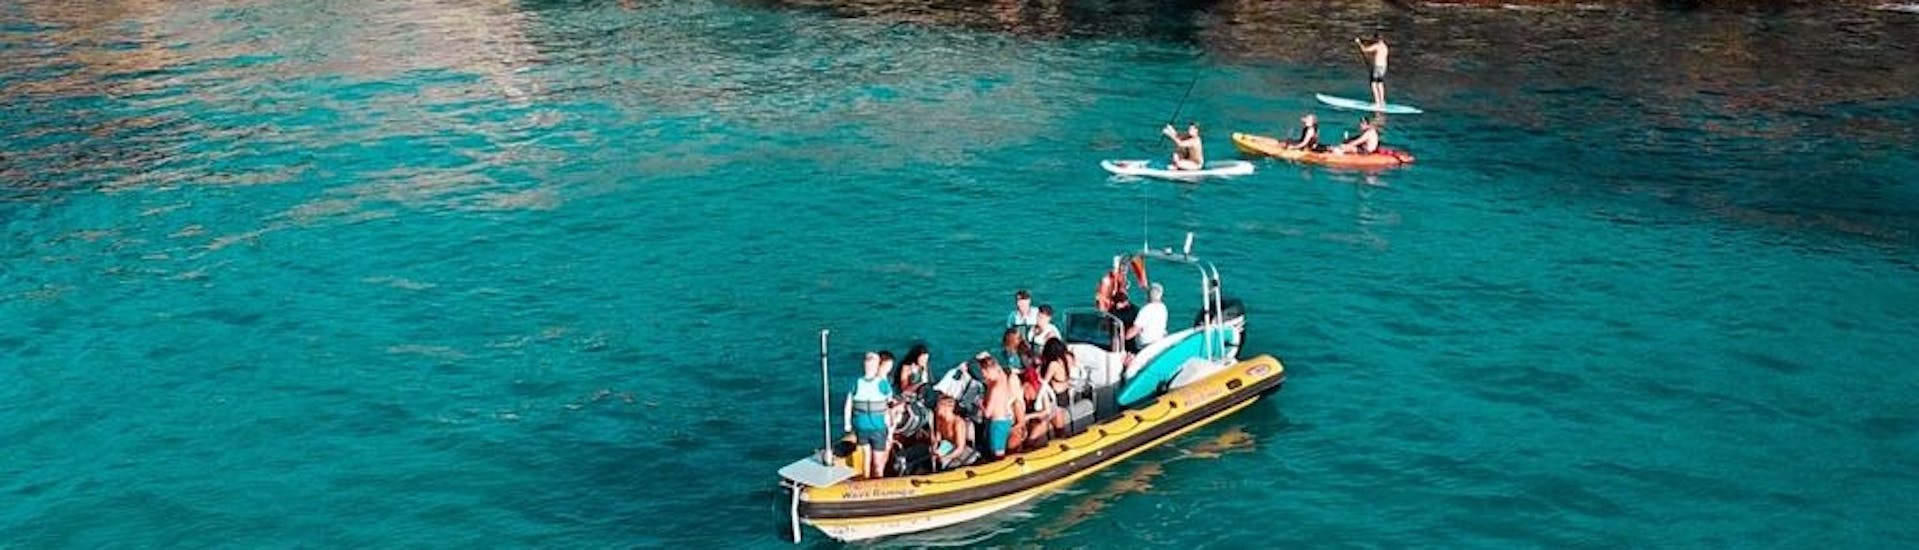 Partecipanti su un motoscafo che si fermano per una nuotata nelle acque turchesi della Baia di Alcudia durante una gita in barca da Can Picafort al parco naturale di Llevant con North Coast Adventure Mallorca.